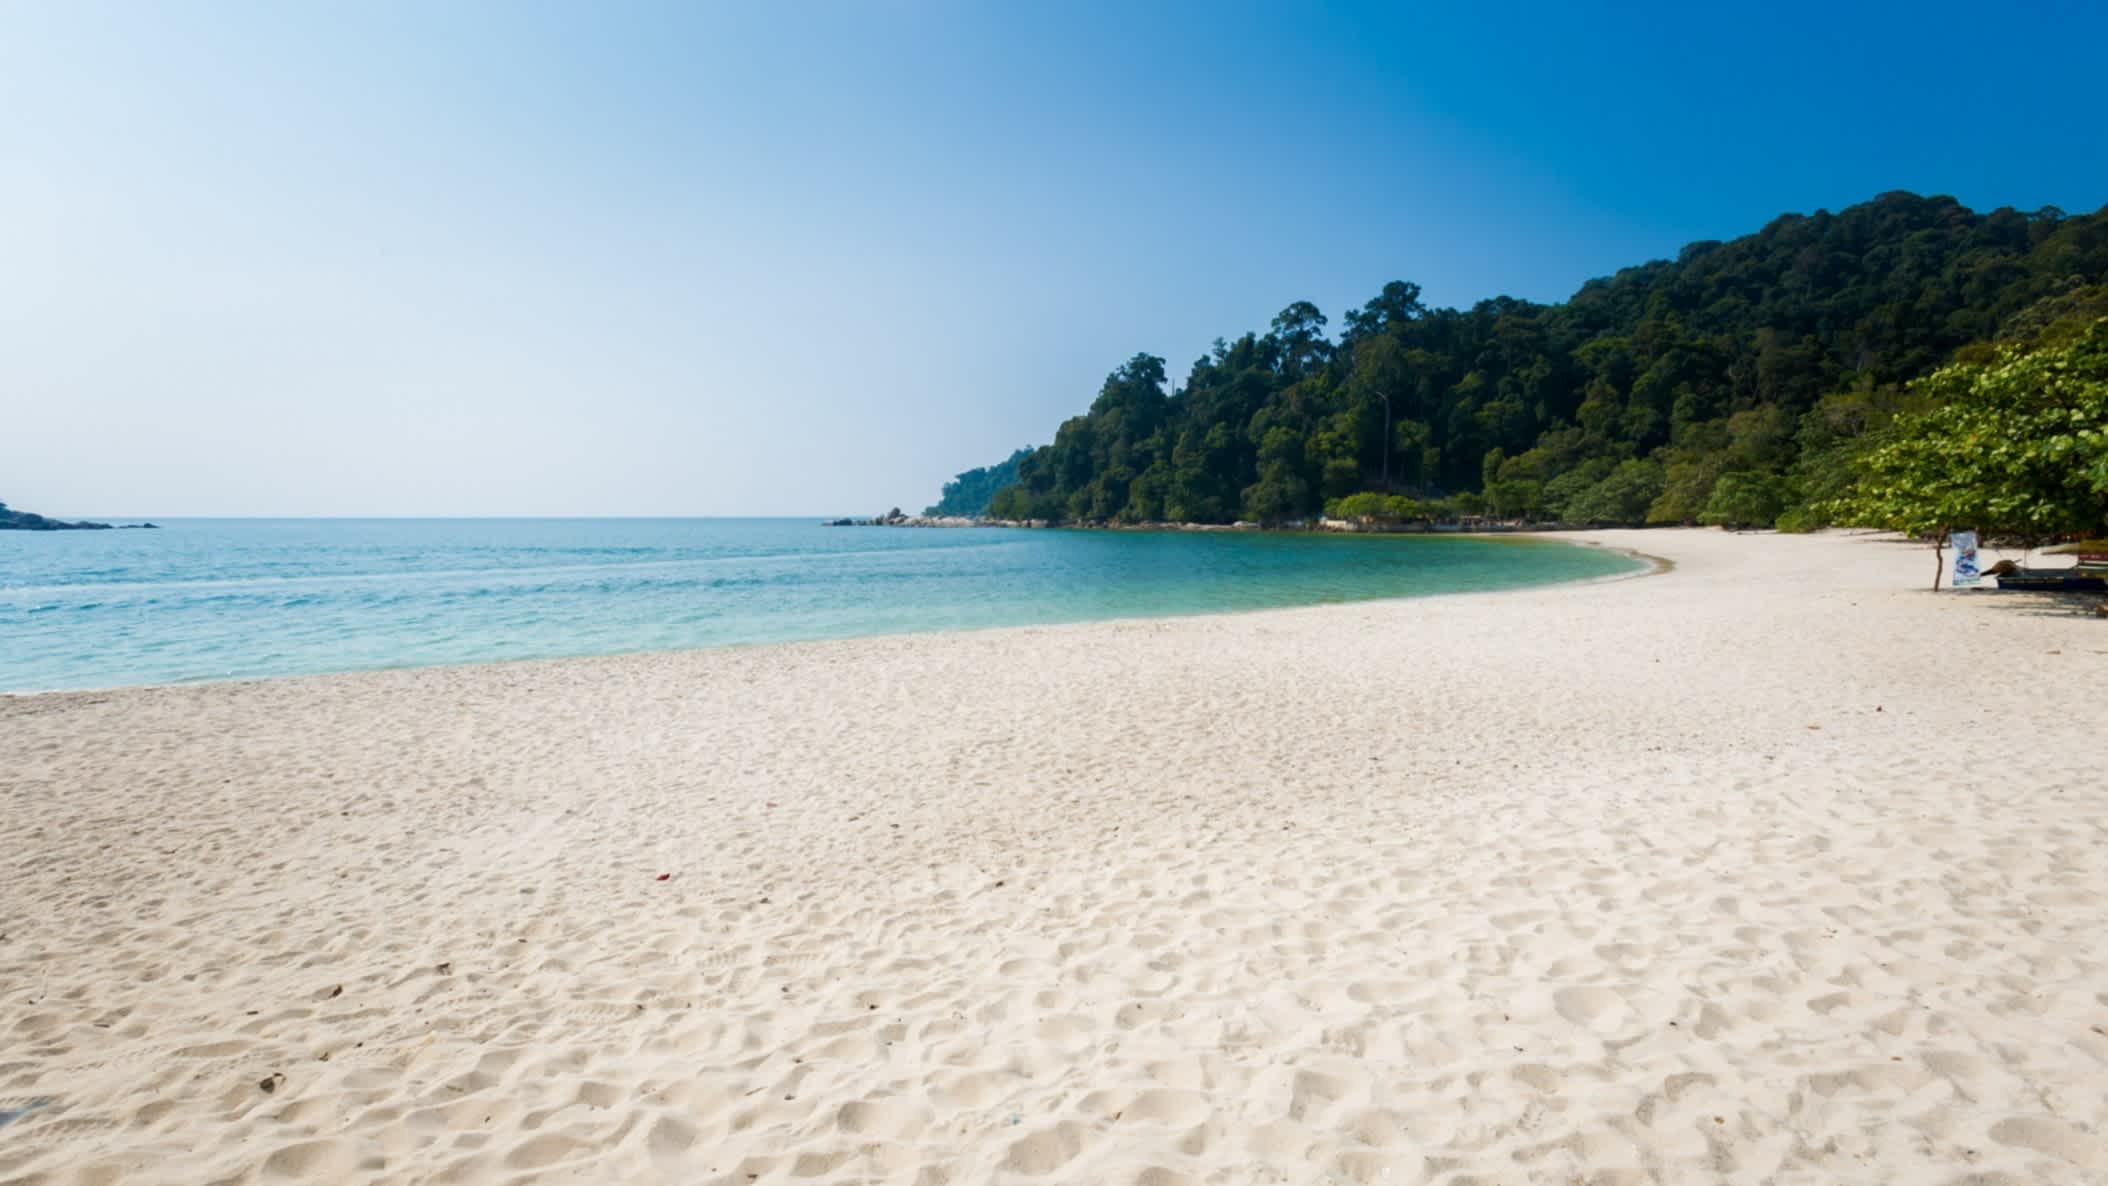 Der Strand Teluk Nipah Coral Strand, Pangkor, Malaysia mit weißem Sand und grüner Vegetation im Hintergrund.